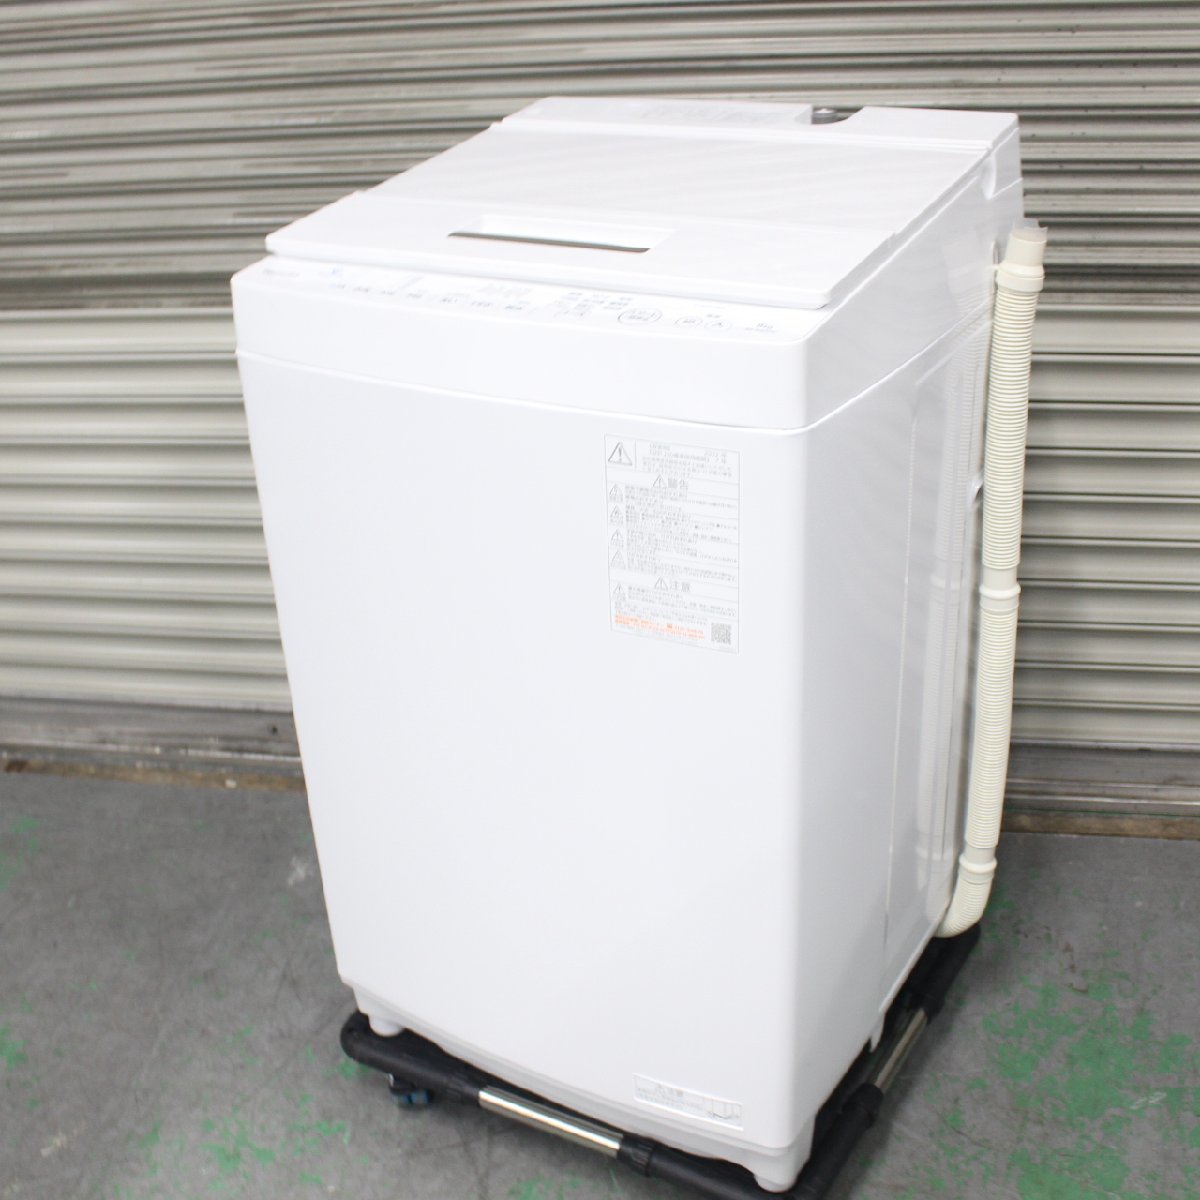 横浜市旭区にて 東芝 全自動洗濯機 AW-8DH1 2022年製 を出張買取させて頂きました。